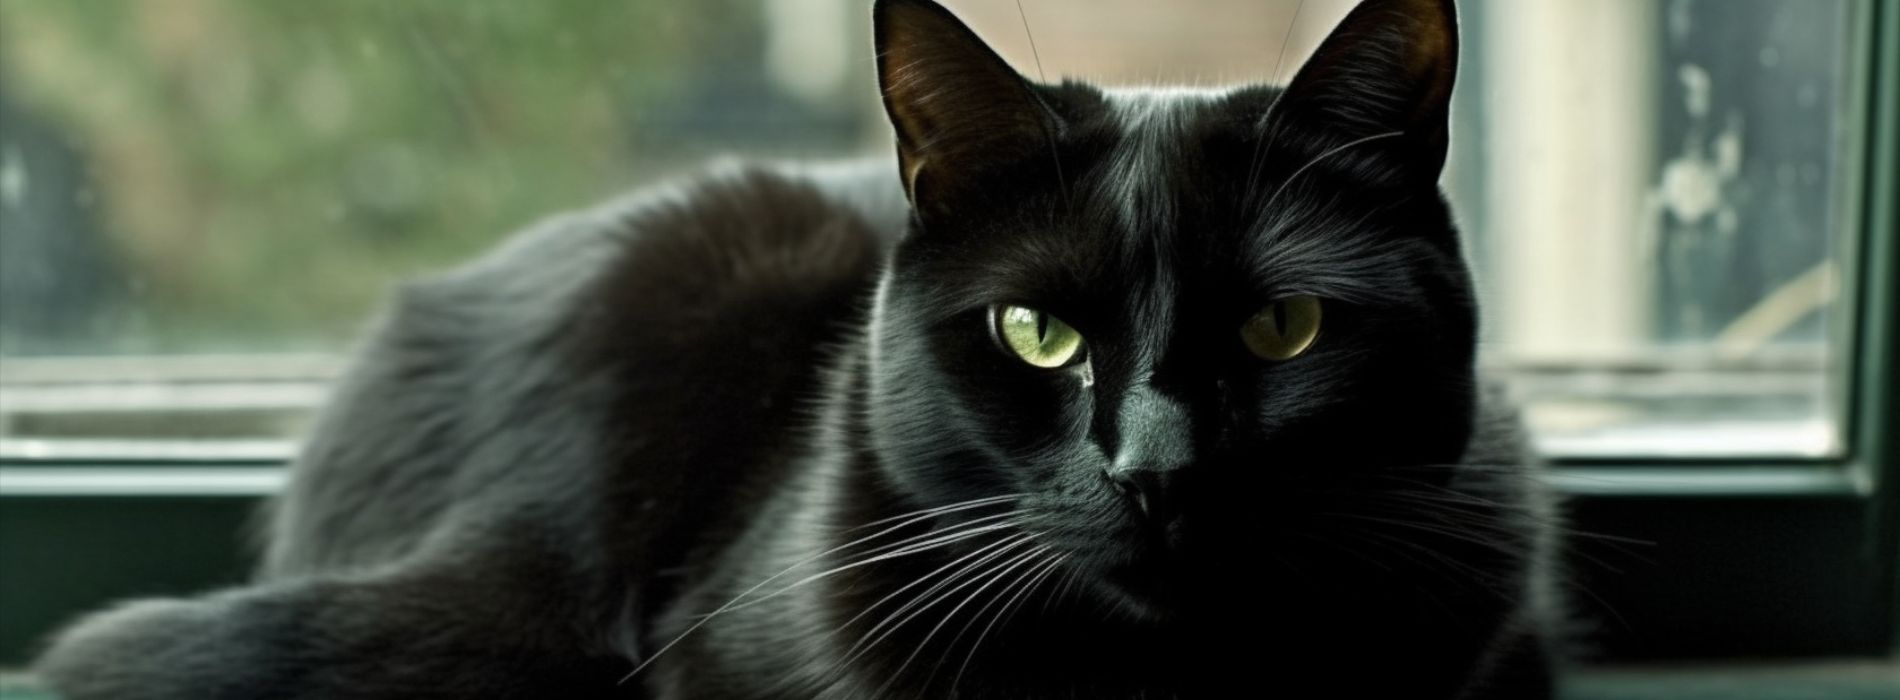  zwarte kat